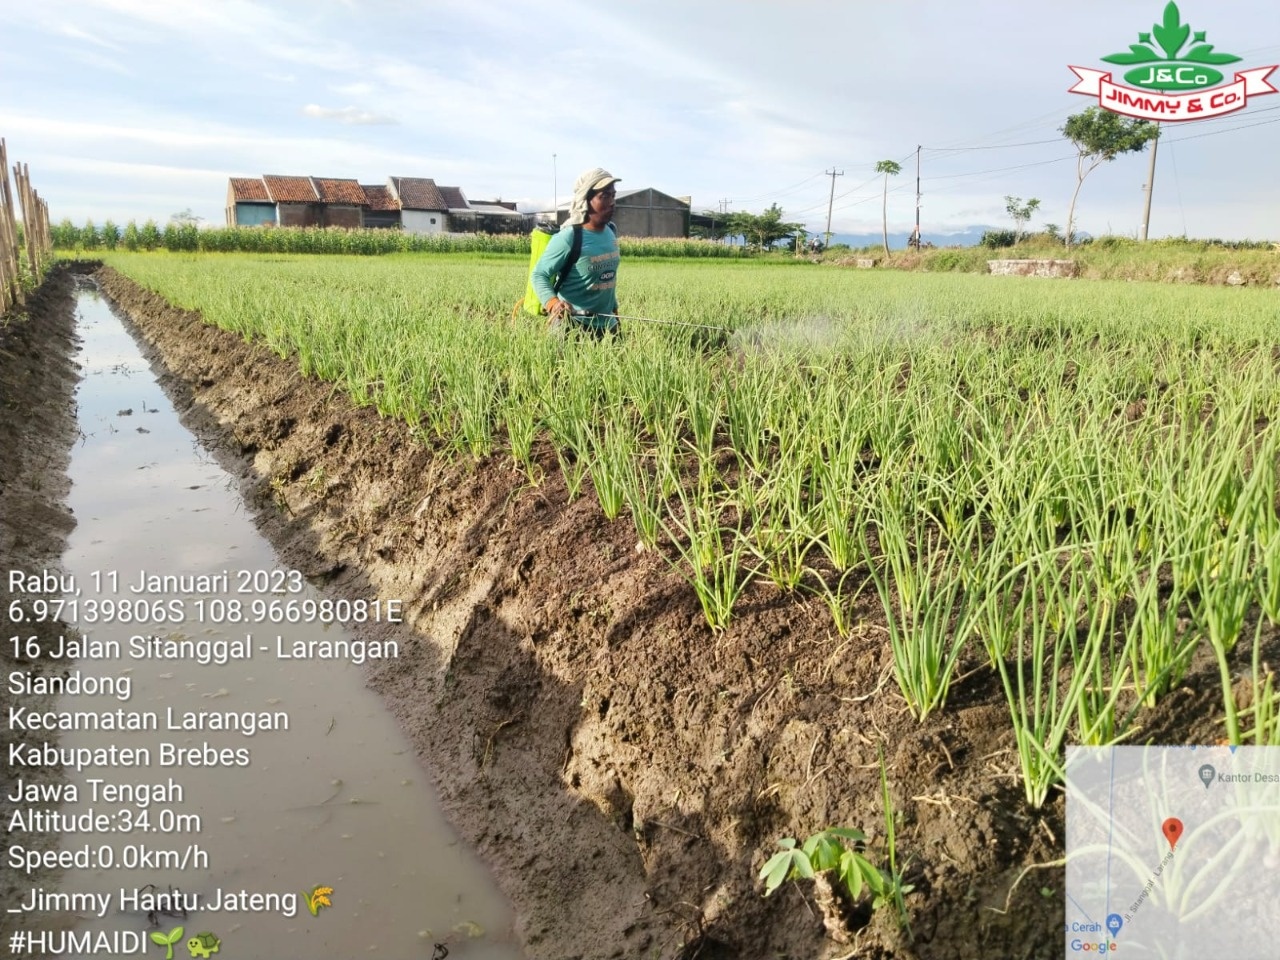 Jual Pupuk Organik Di Lampung Terdekat